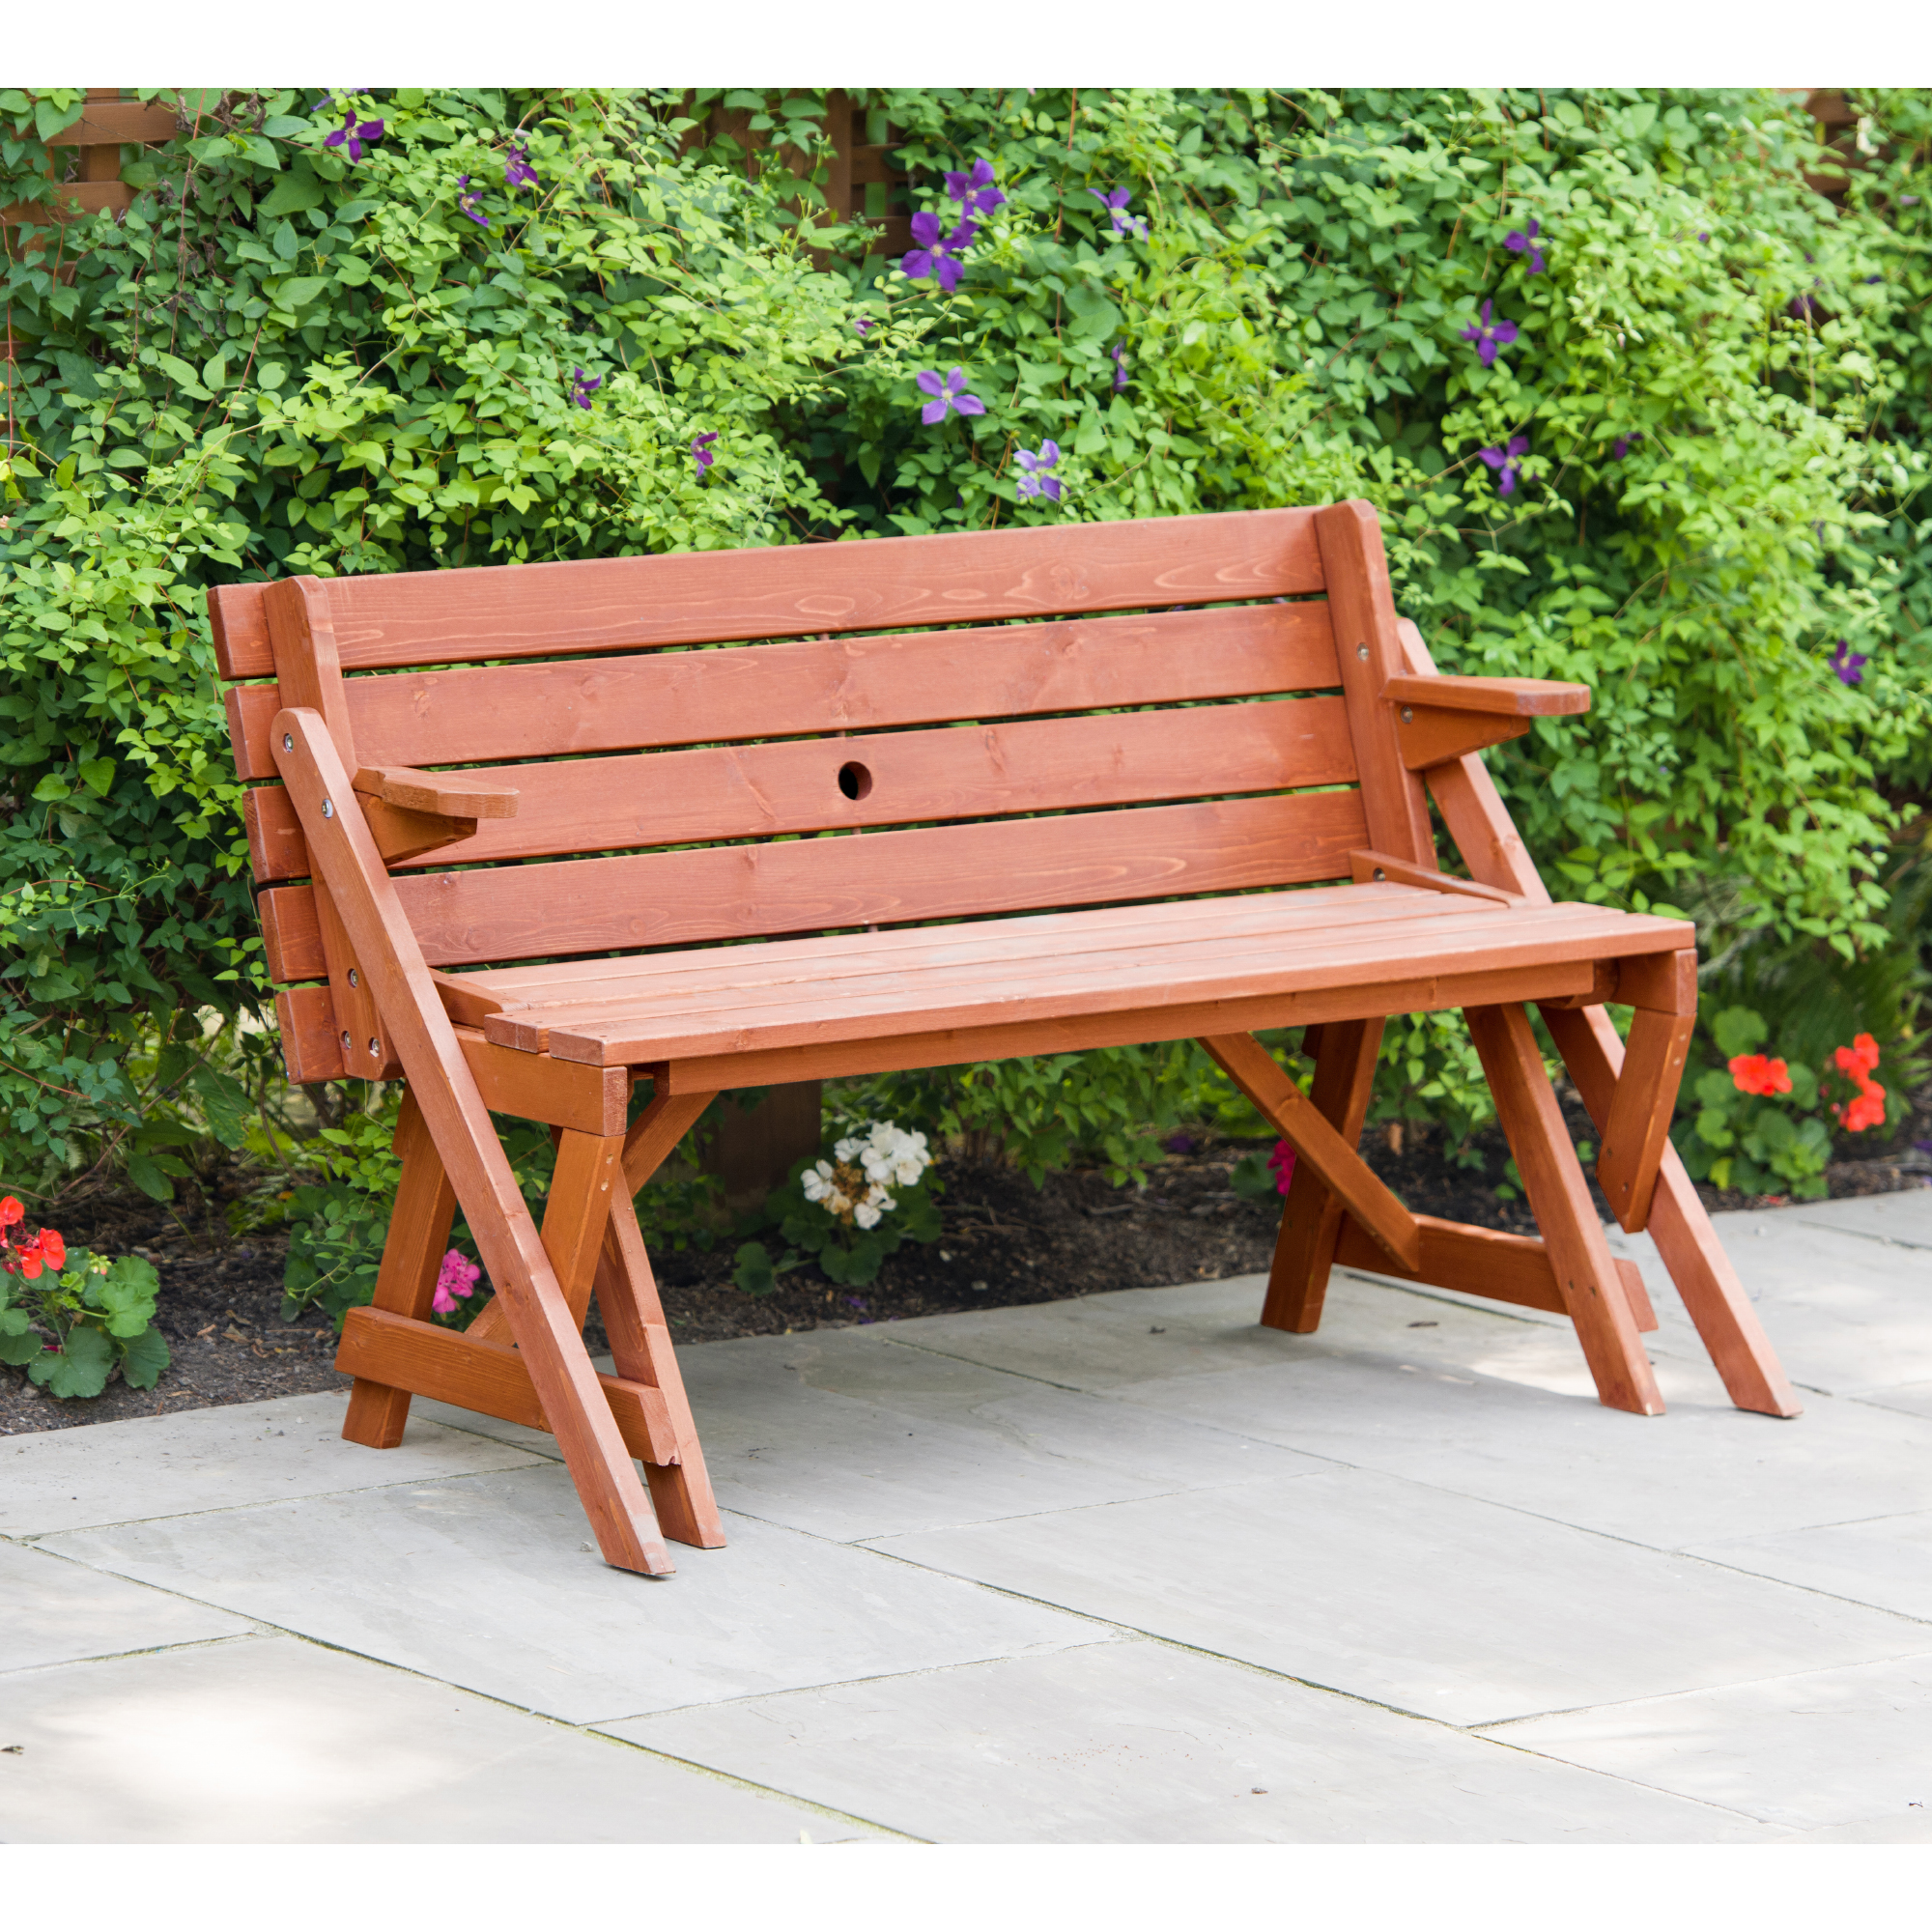 Leisure Season Ltd Convertible Picnic Table Garden Bench